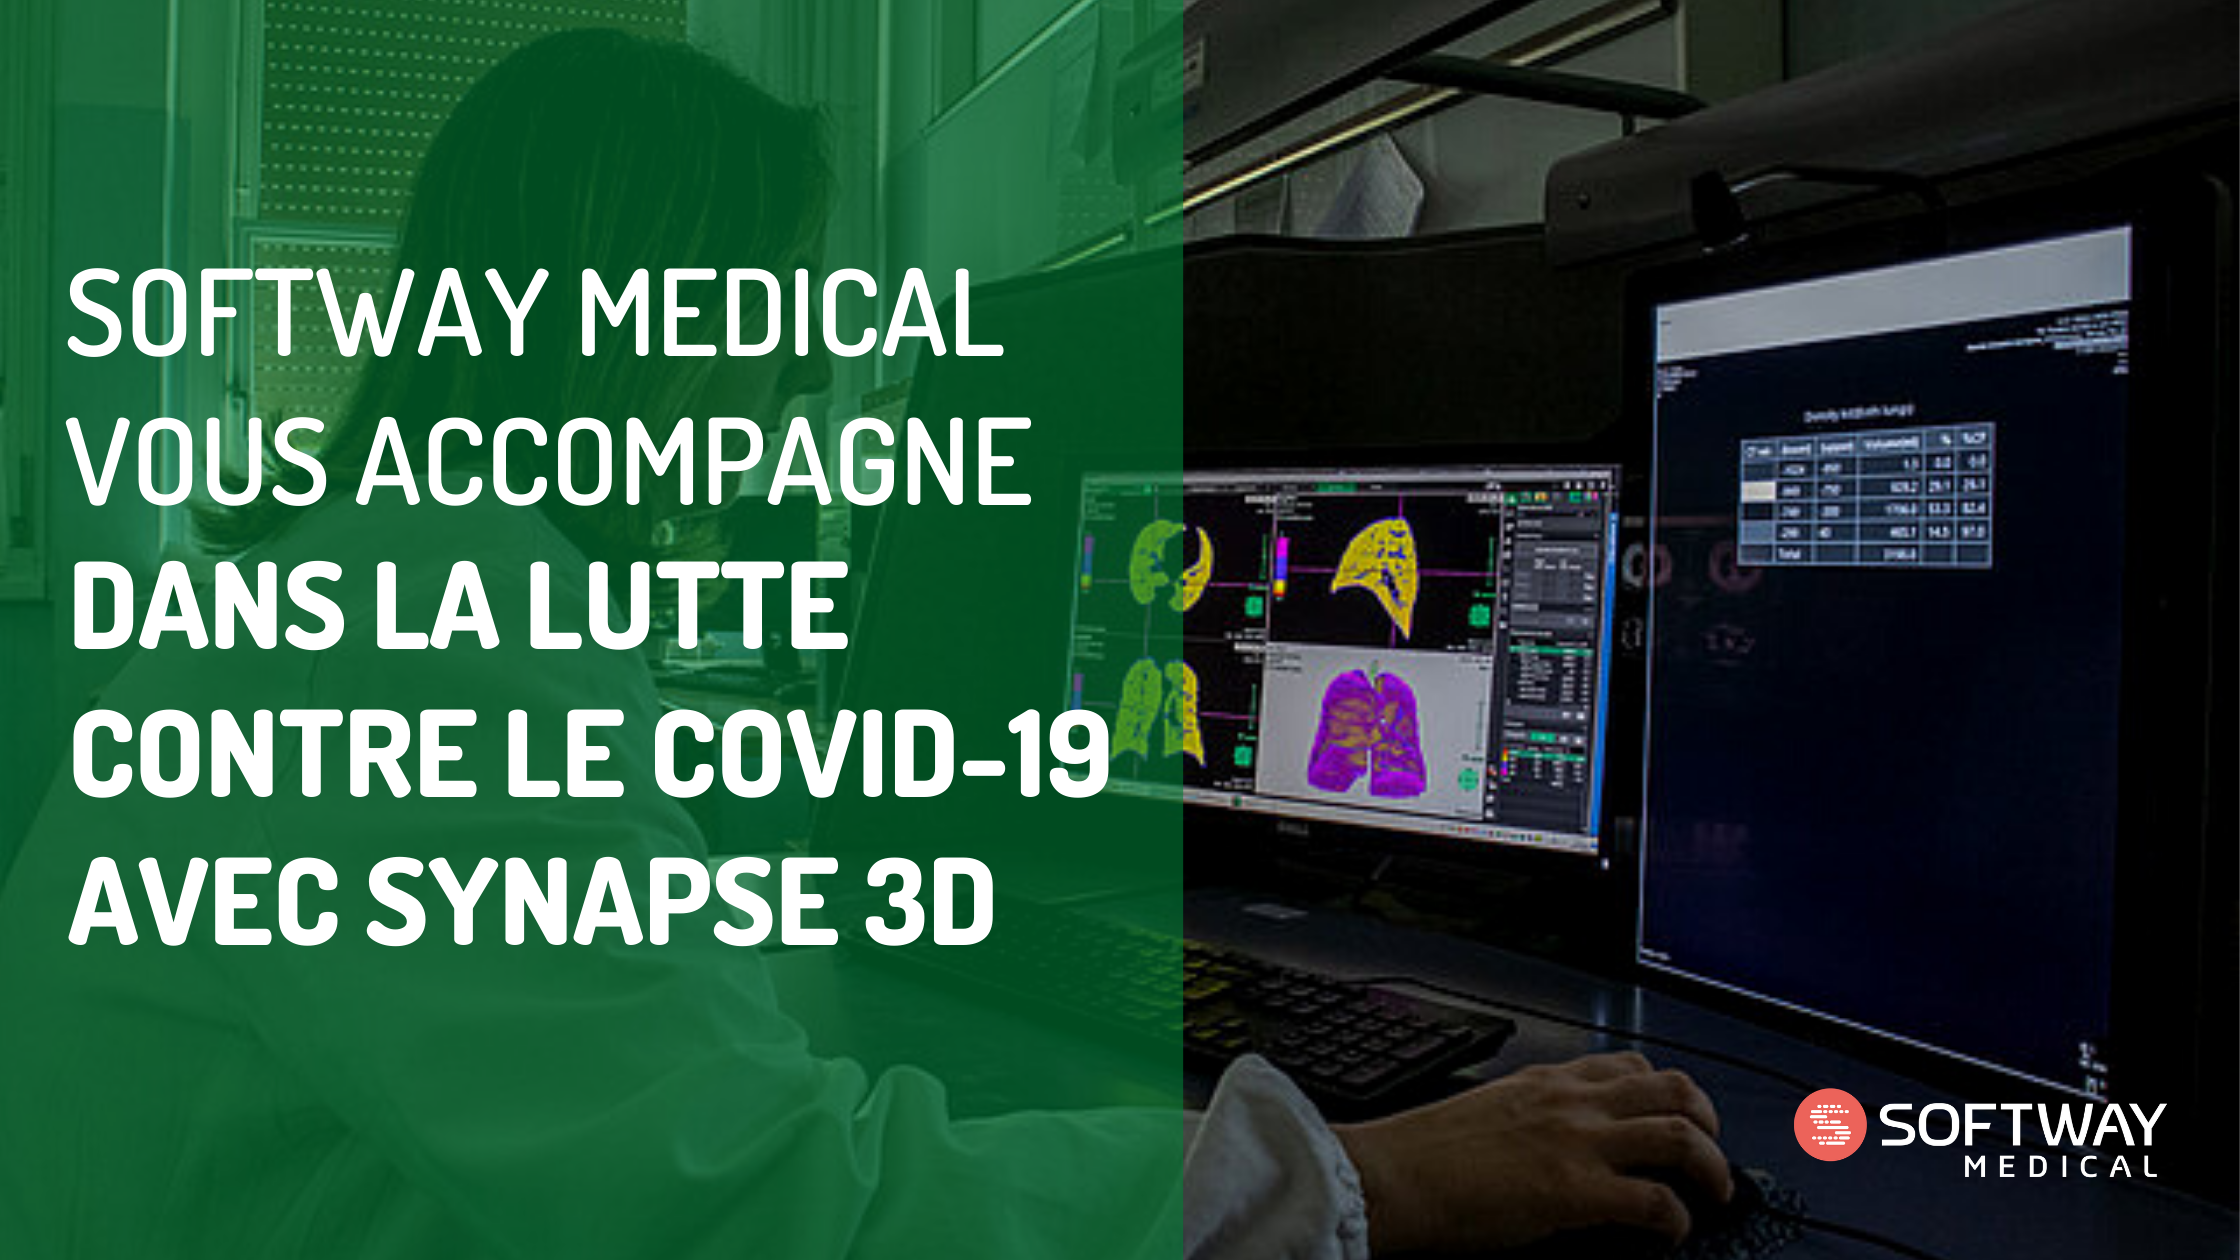 Softway Medical vous accompagne dans la lutte contre le COVID-19 avec Synapse 3D